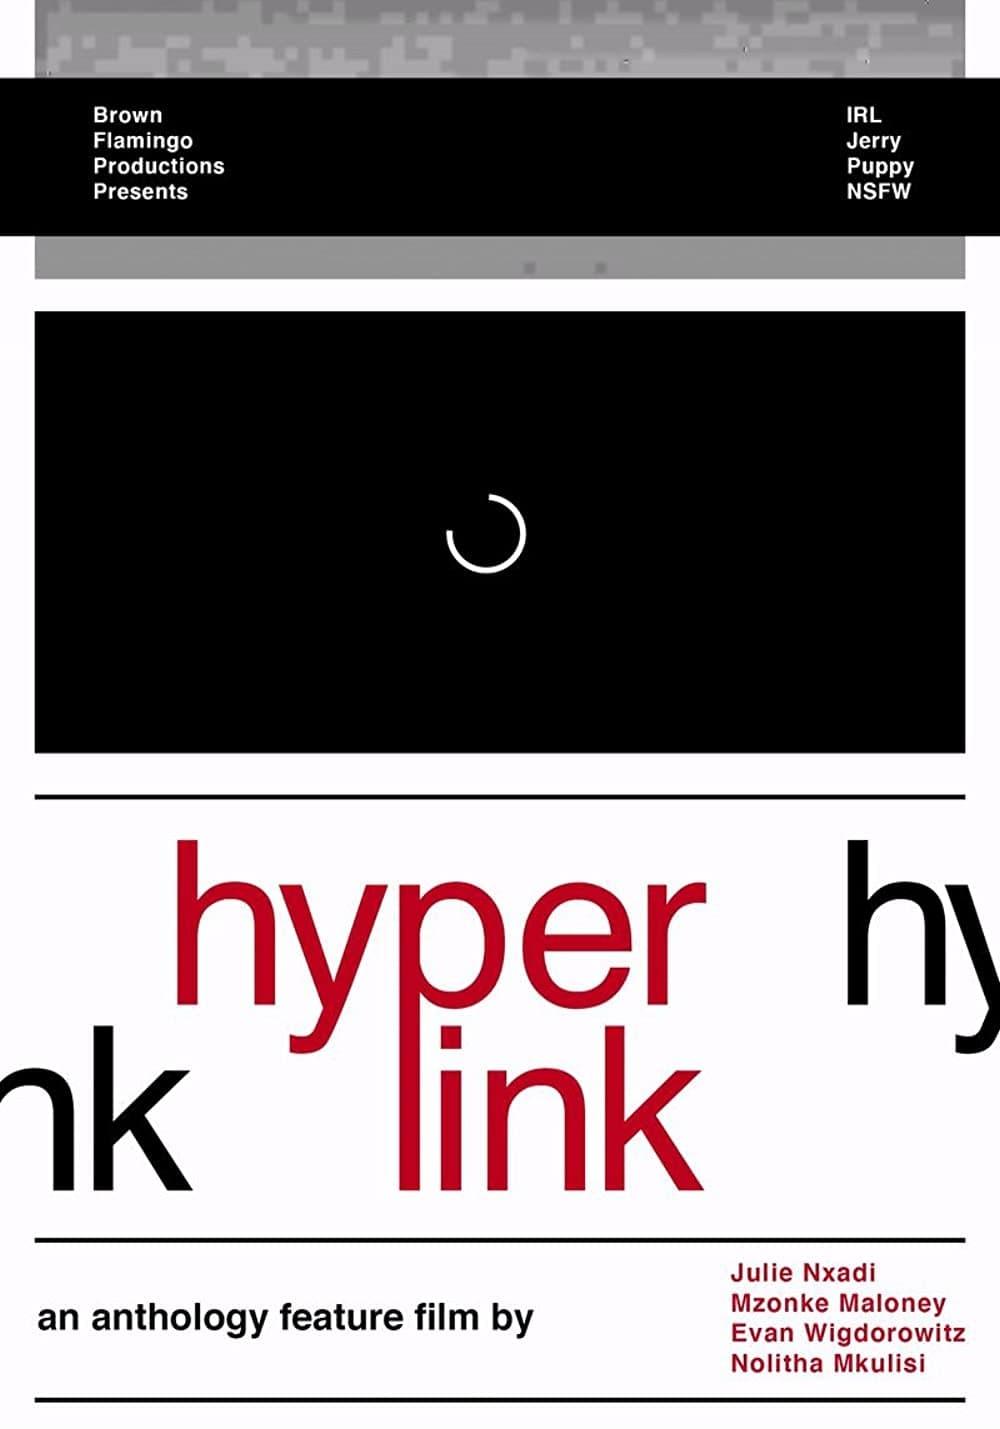 Hyperlink poster